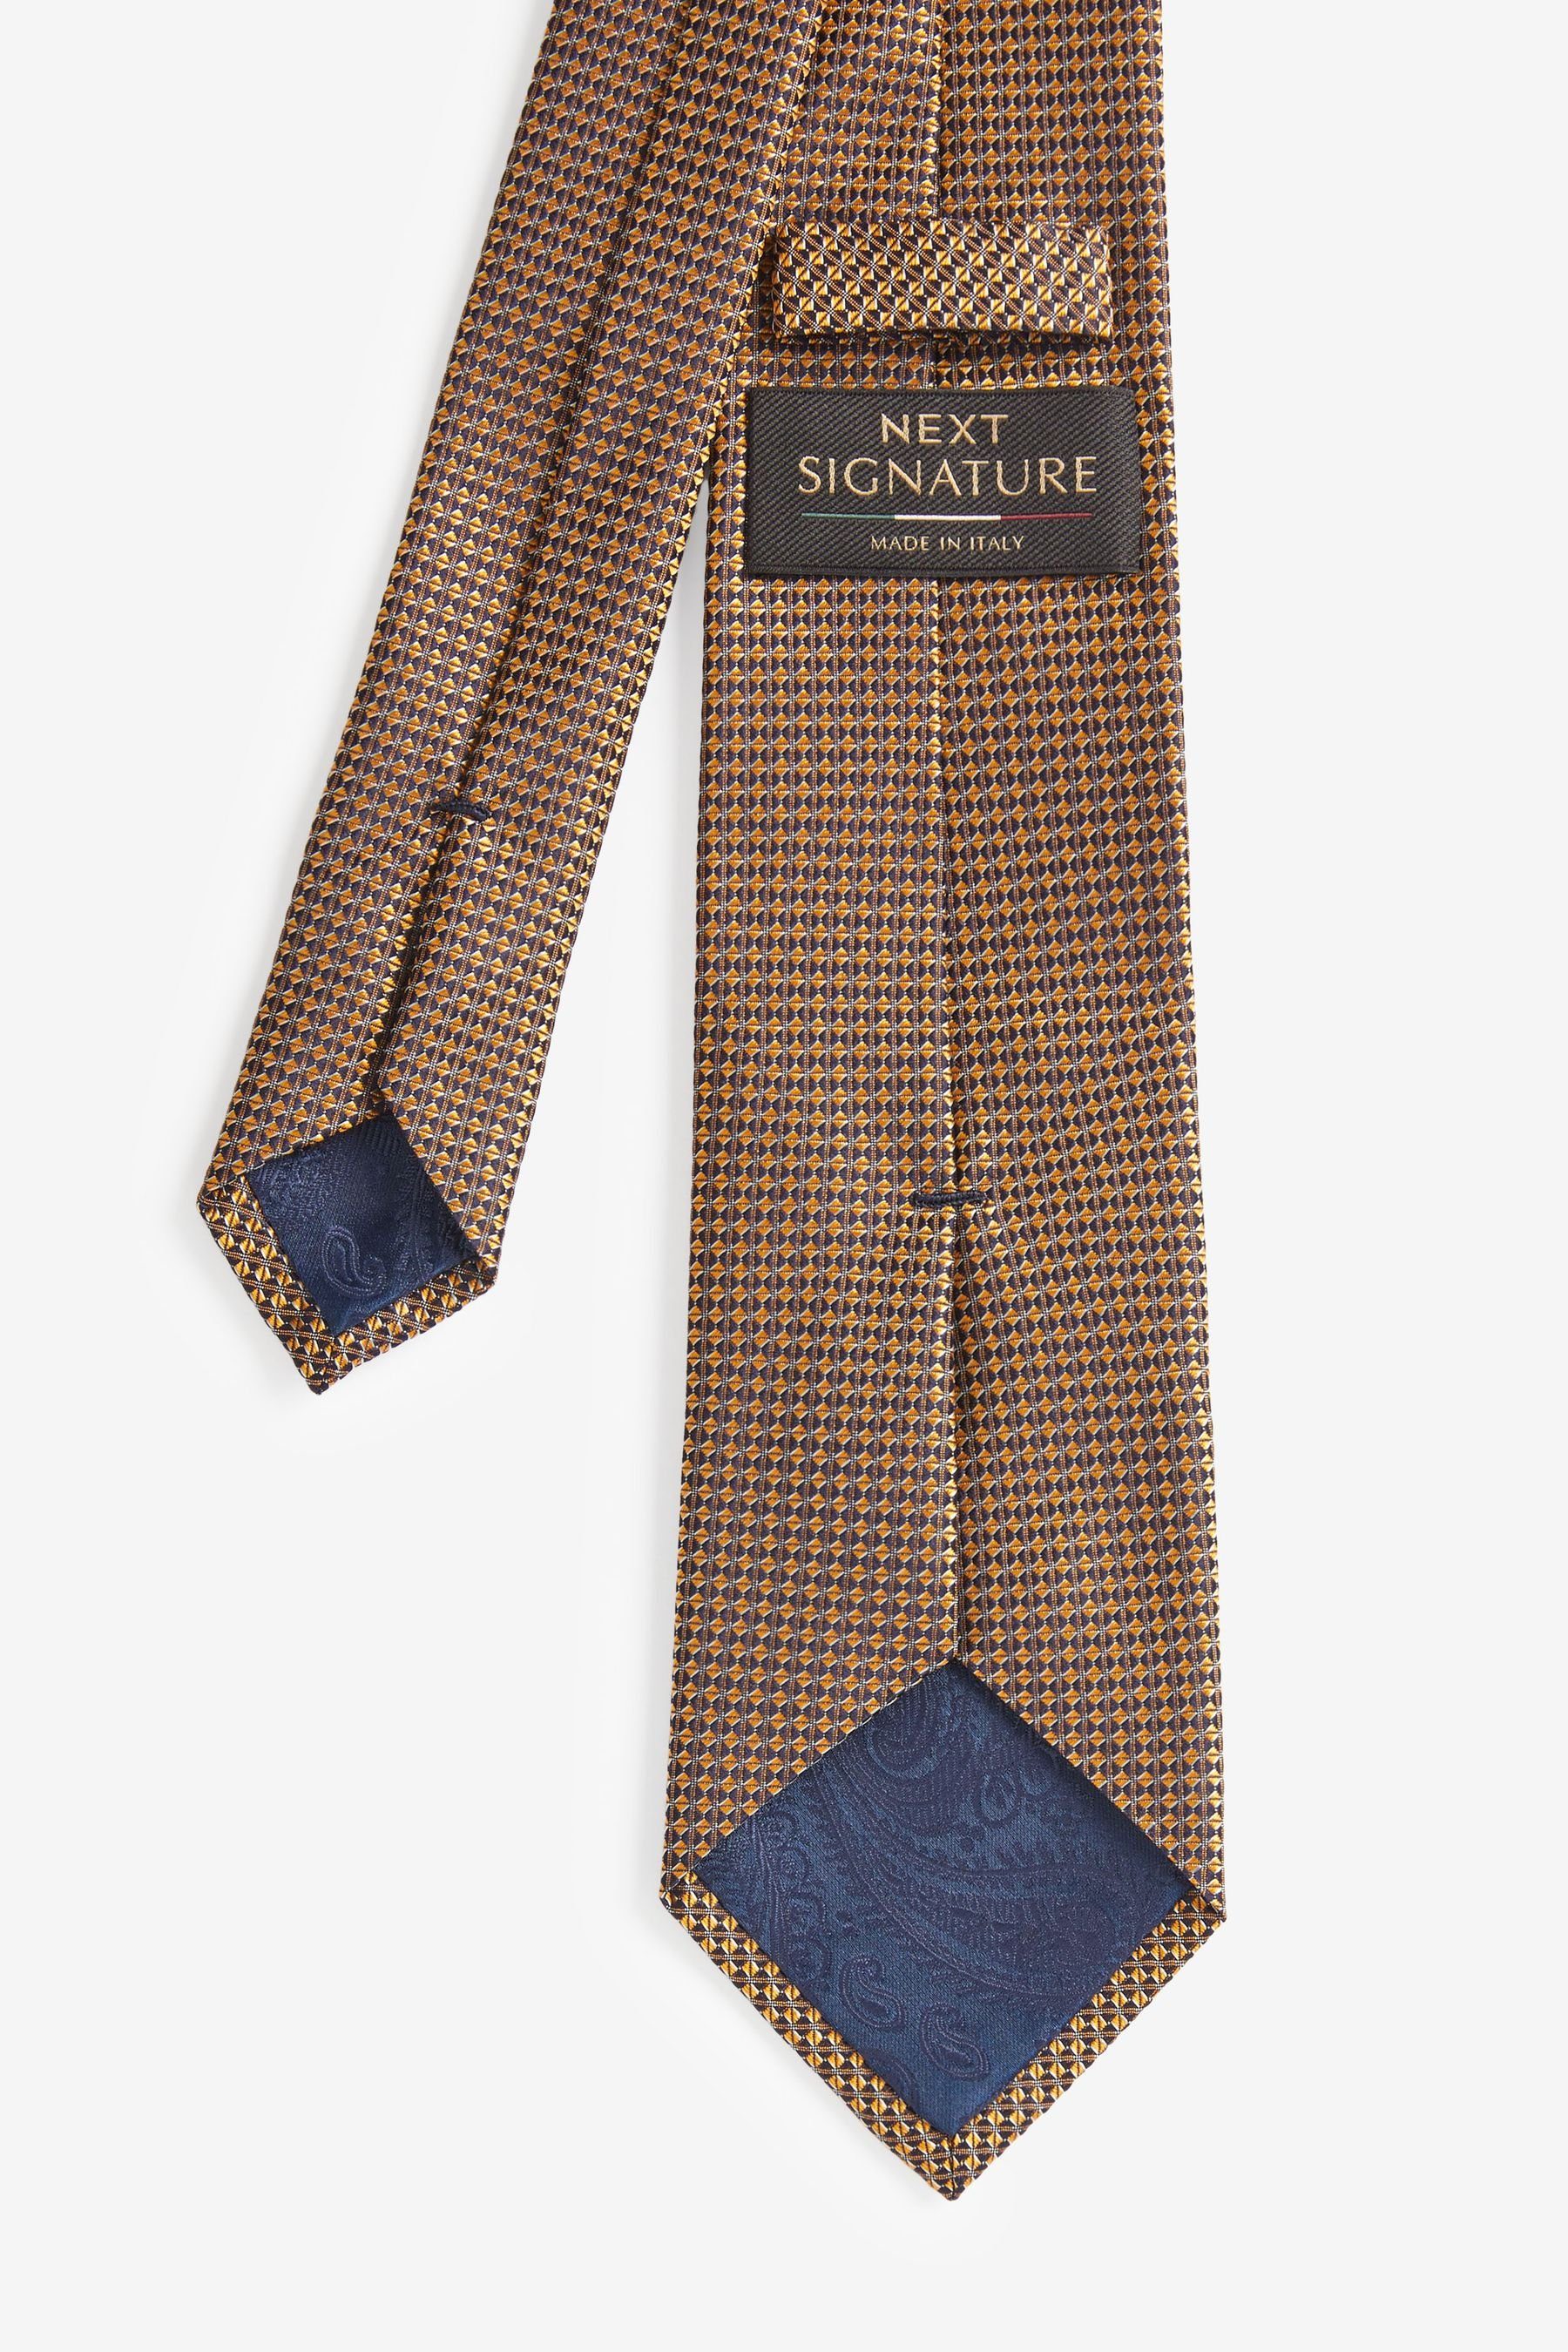 Signature-Krawatte Made Blue Floral Teal Next in Krawatte und Einstecktuch (2-St) Italy